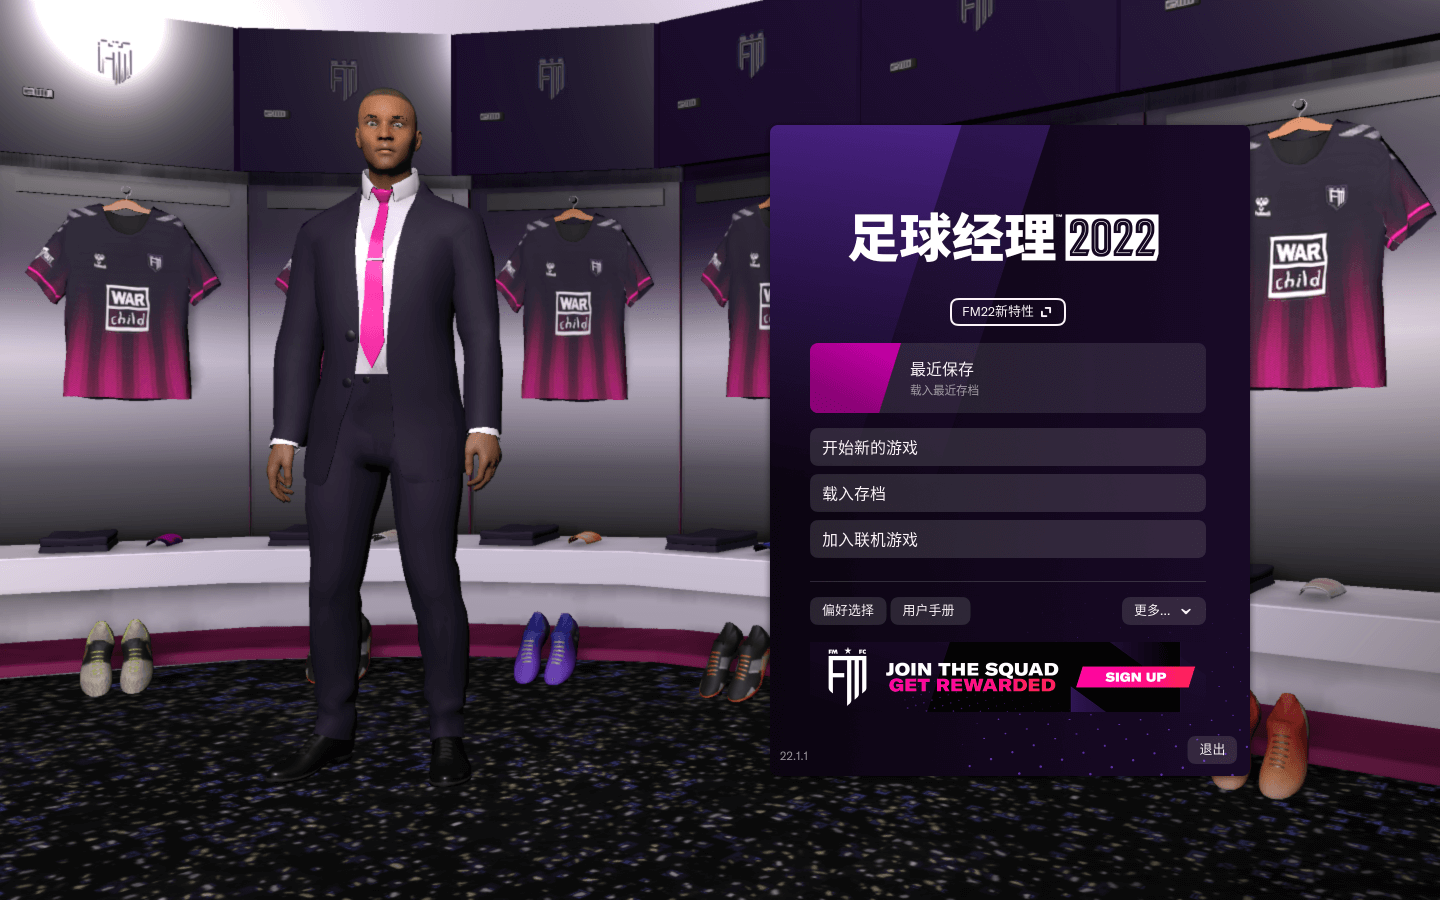 足球经理2022 Football Manager 2022 for Mac v21.1.1中文原生版-1